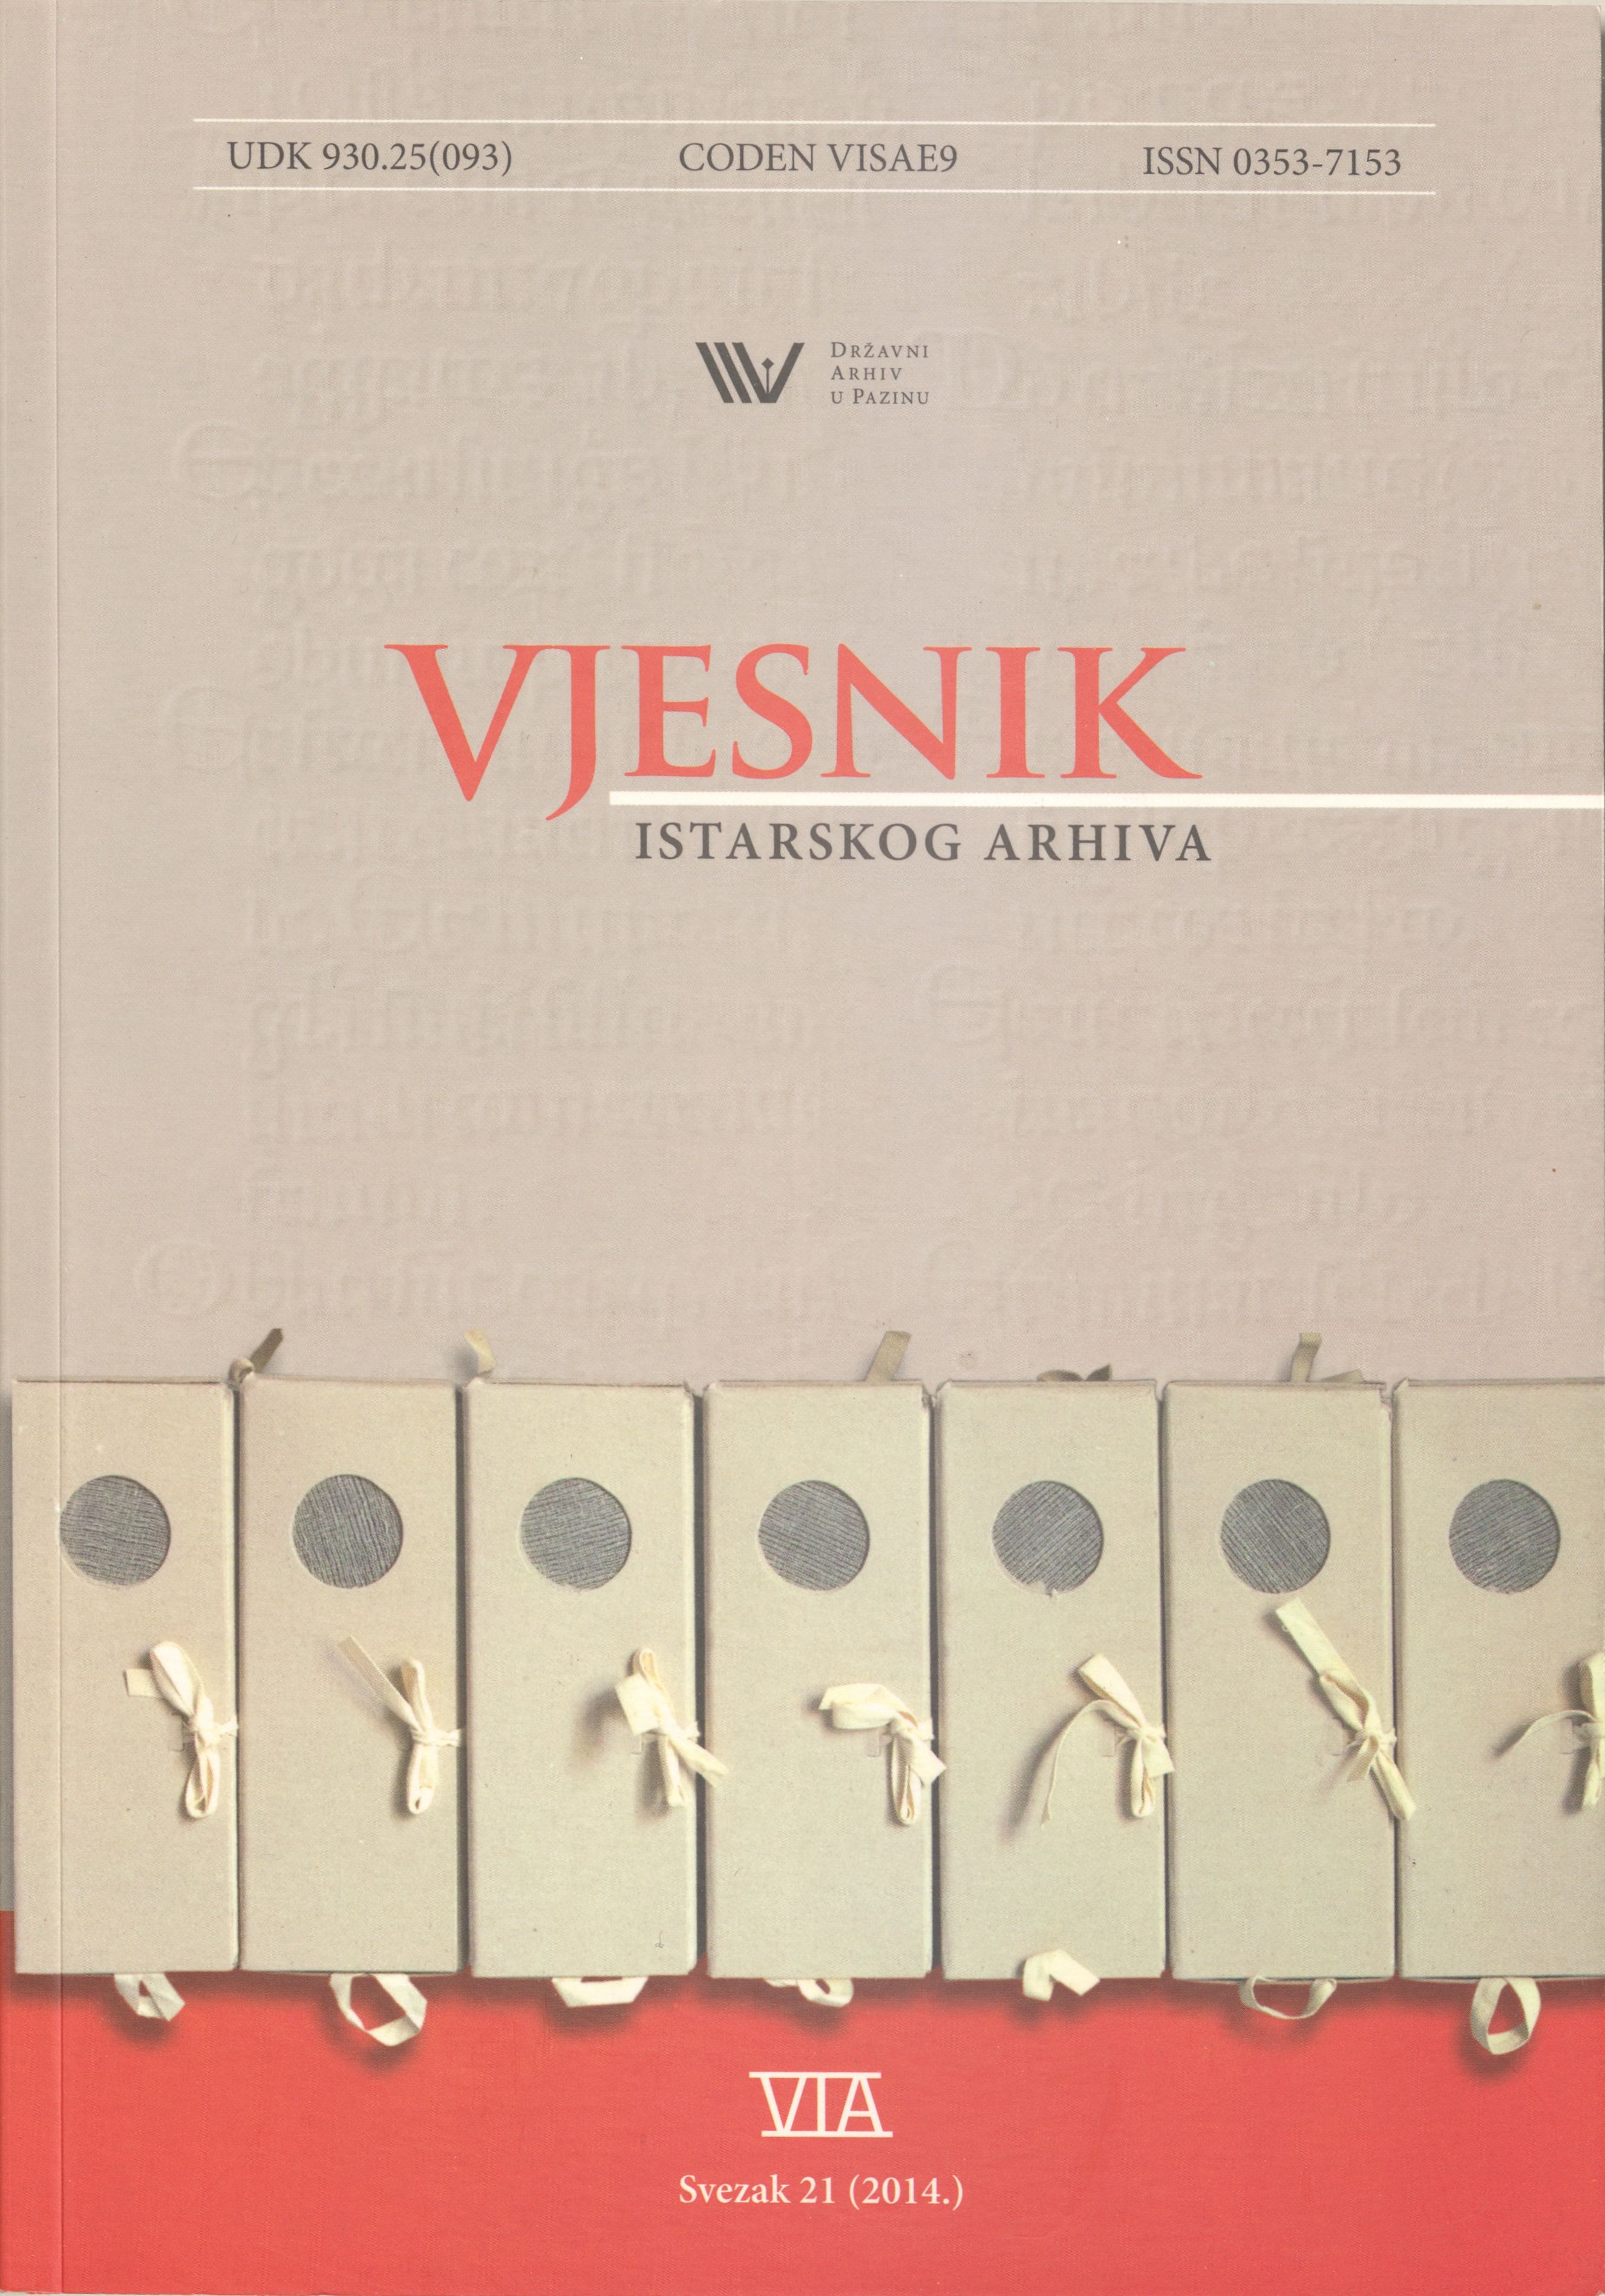 					Pogledaj Vjesnik istarskog arhiva sv. 21 (2014.)
				